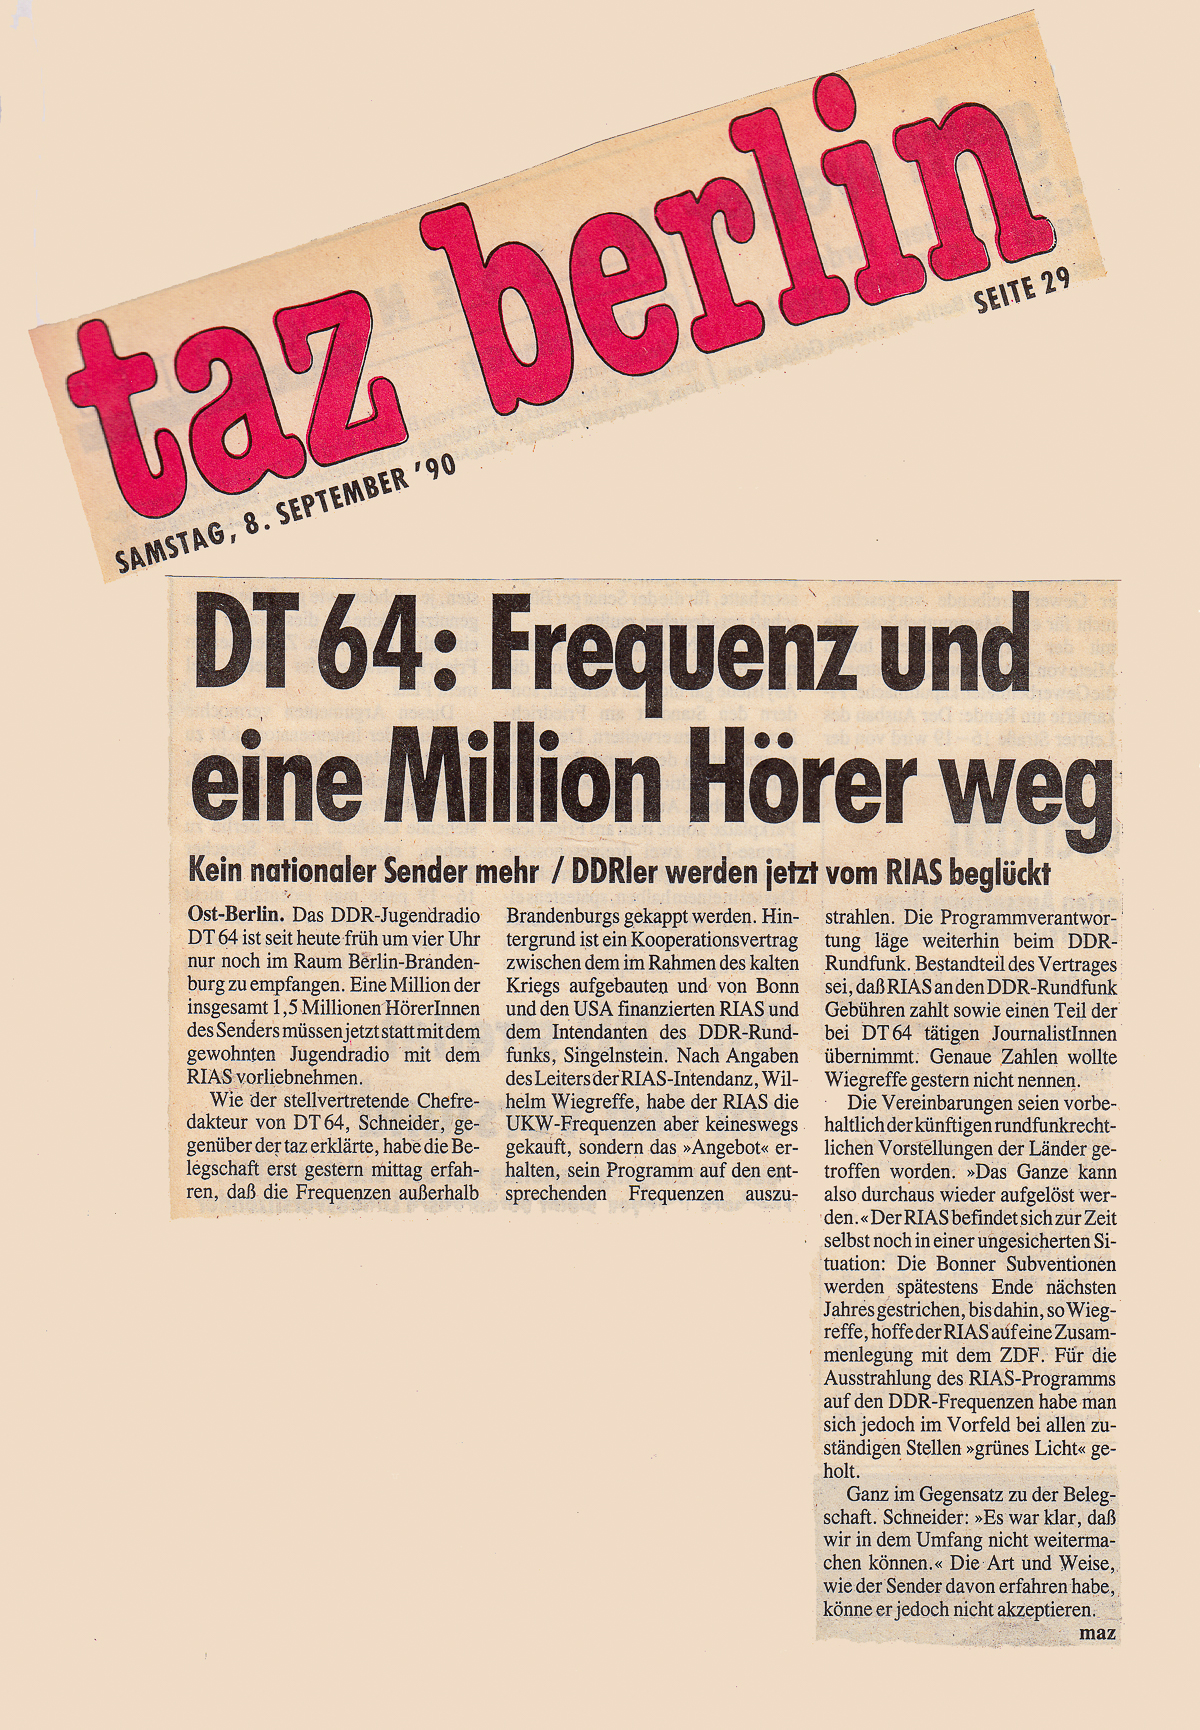 die tageszeitung "taz", 08.09.1990